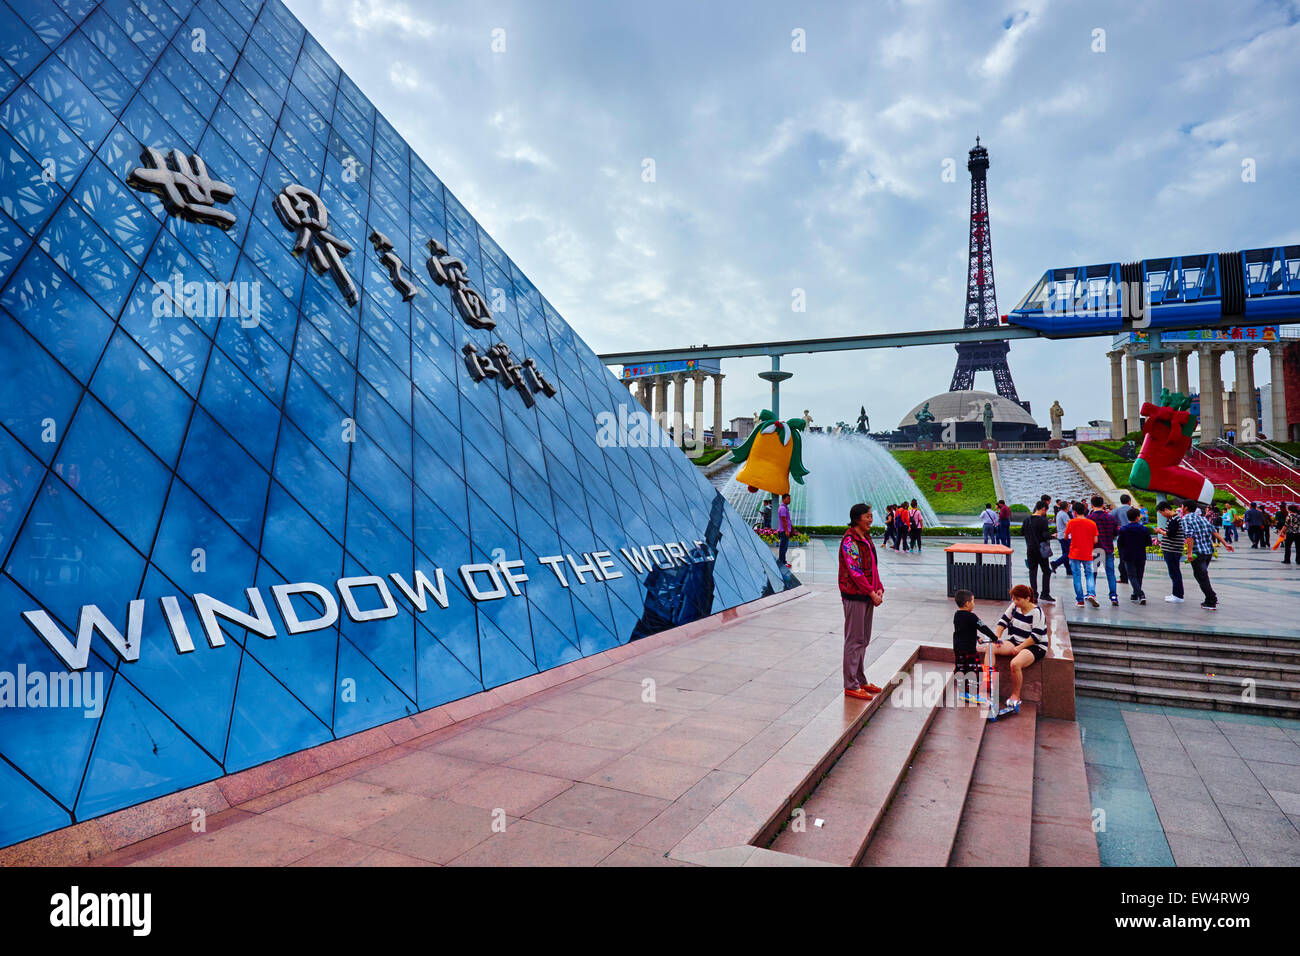 La Chine, la province du Guangdong, Shenzhen, la fenêtre du monde Theme Park Banque D'Images